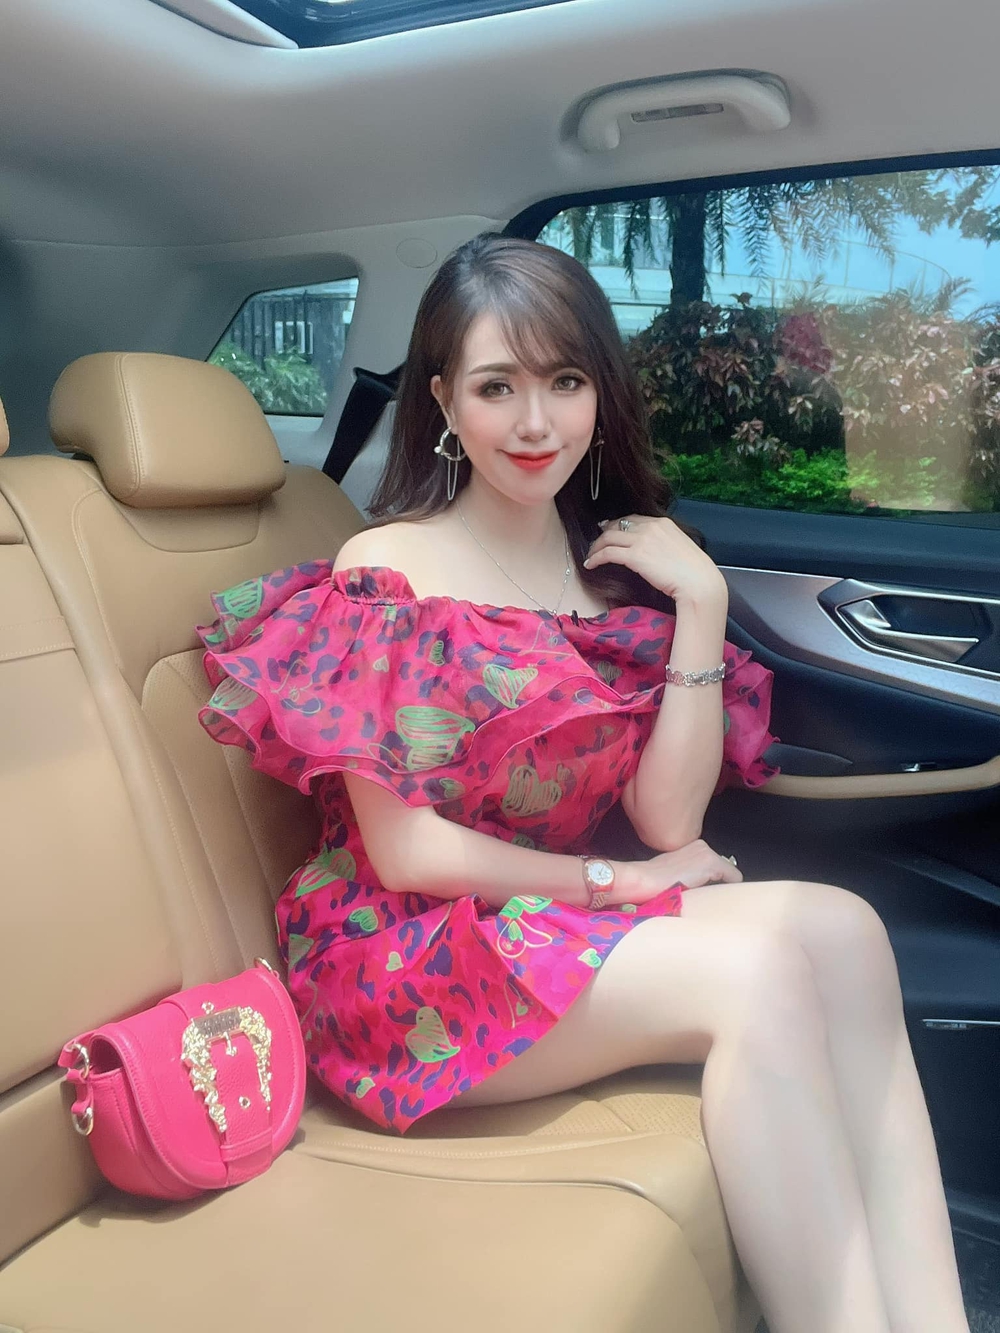 Hot girl Việt đình đám một thời: Giờ là giám đốc marketing, 32 tuổi vẫn nóng bỏng, sexy như thuở nào - Ảnh 4.